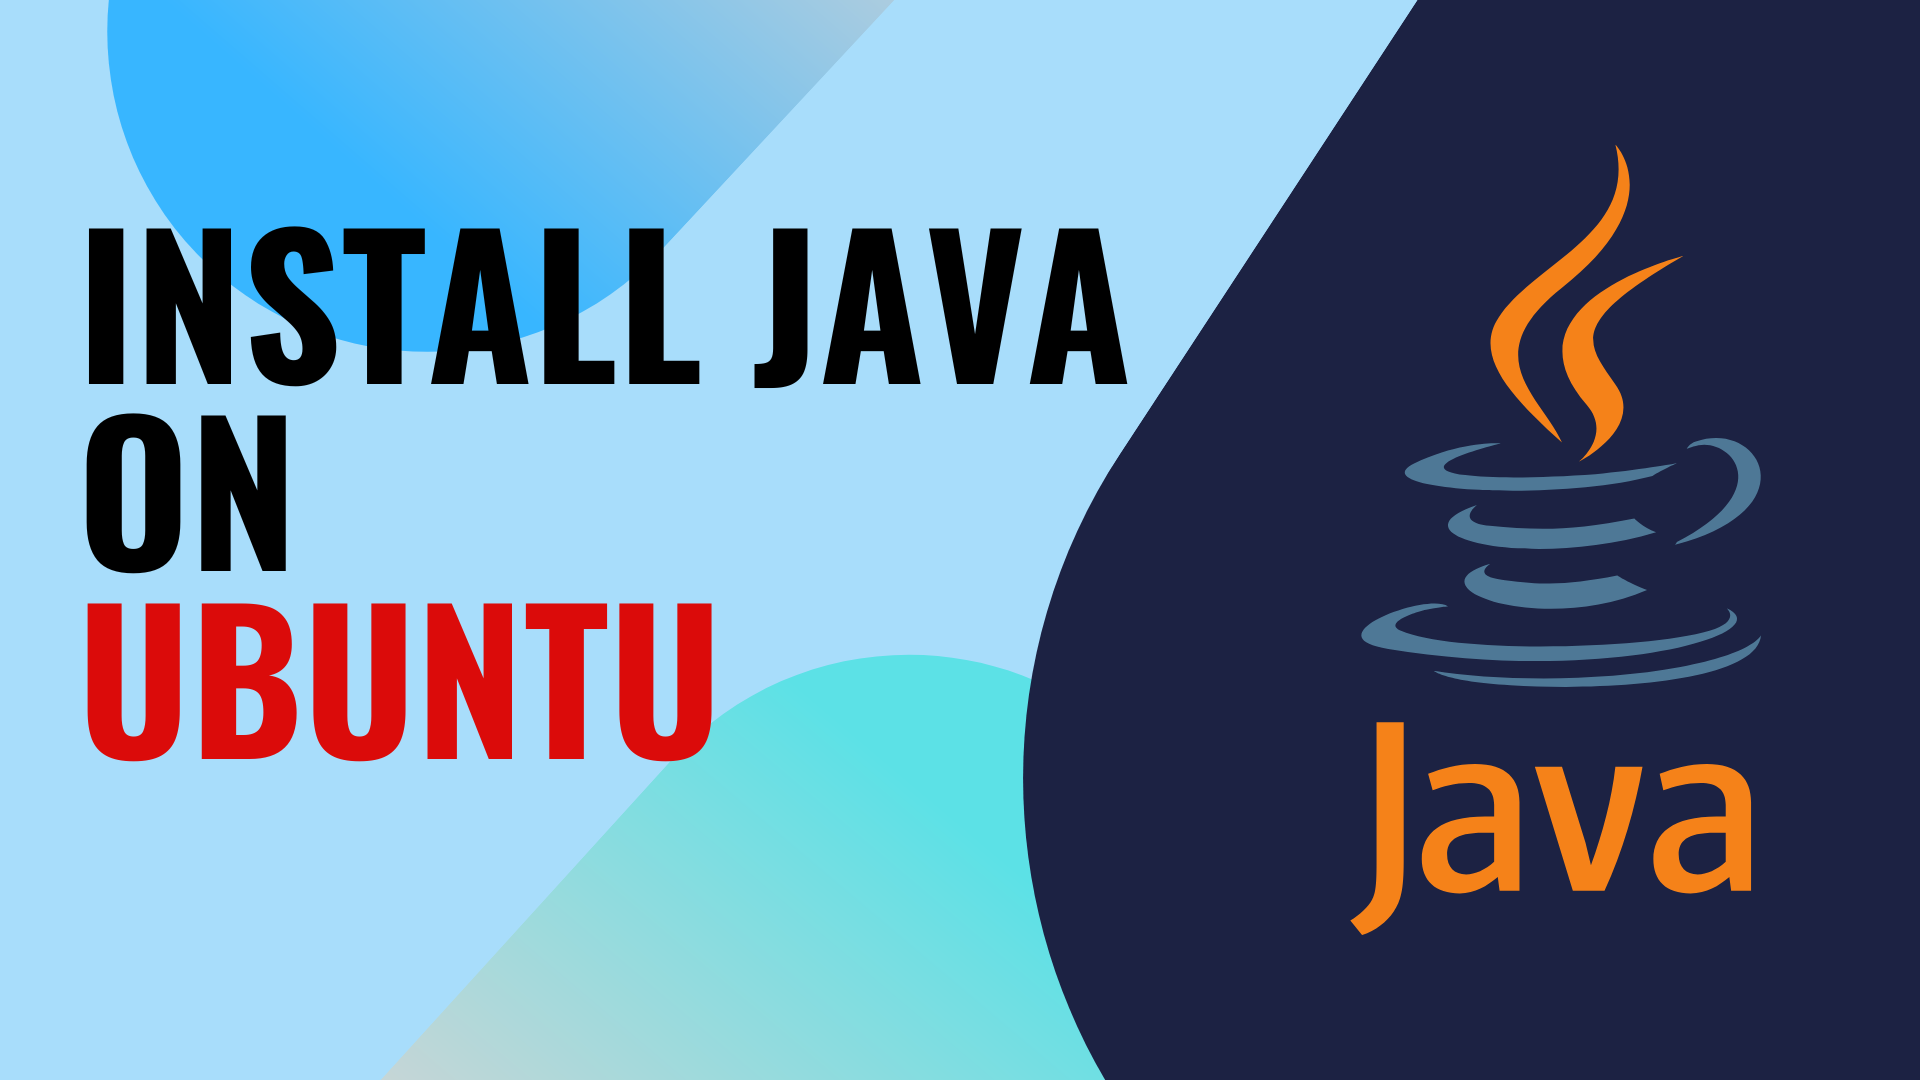 Installation Java on Ubuntu